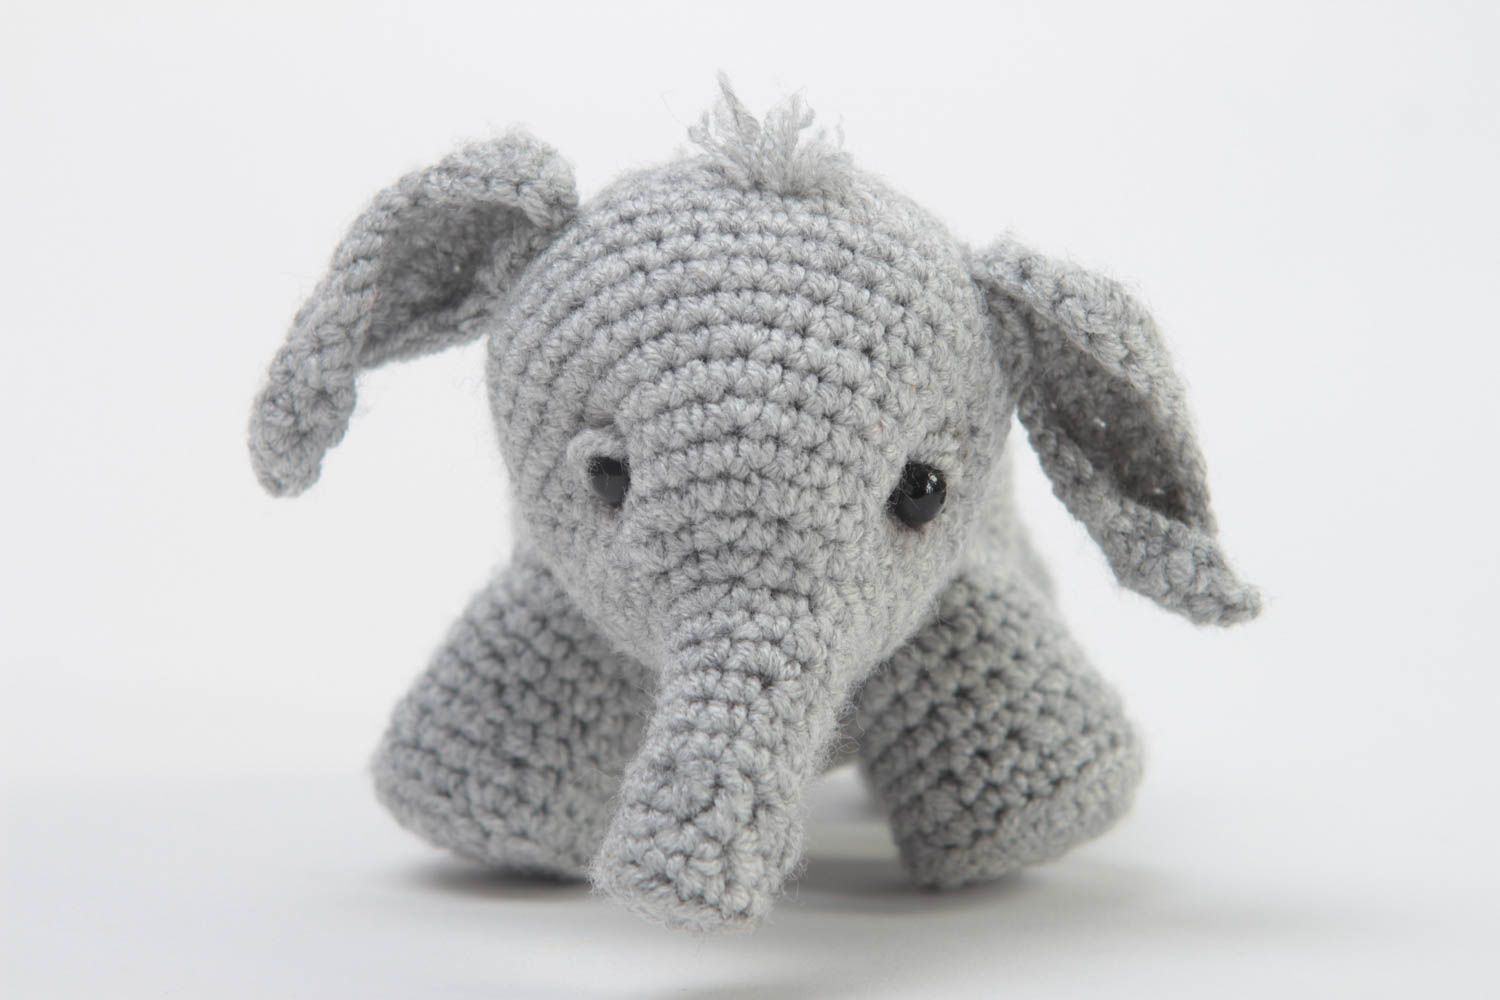 Handmade Elefant Plüschtier weiches Kuscheltier Plüschtier Elefant grau schön foto 3